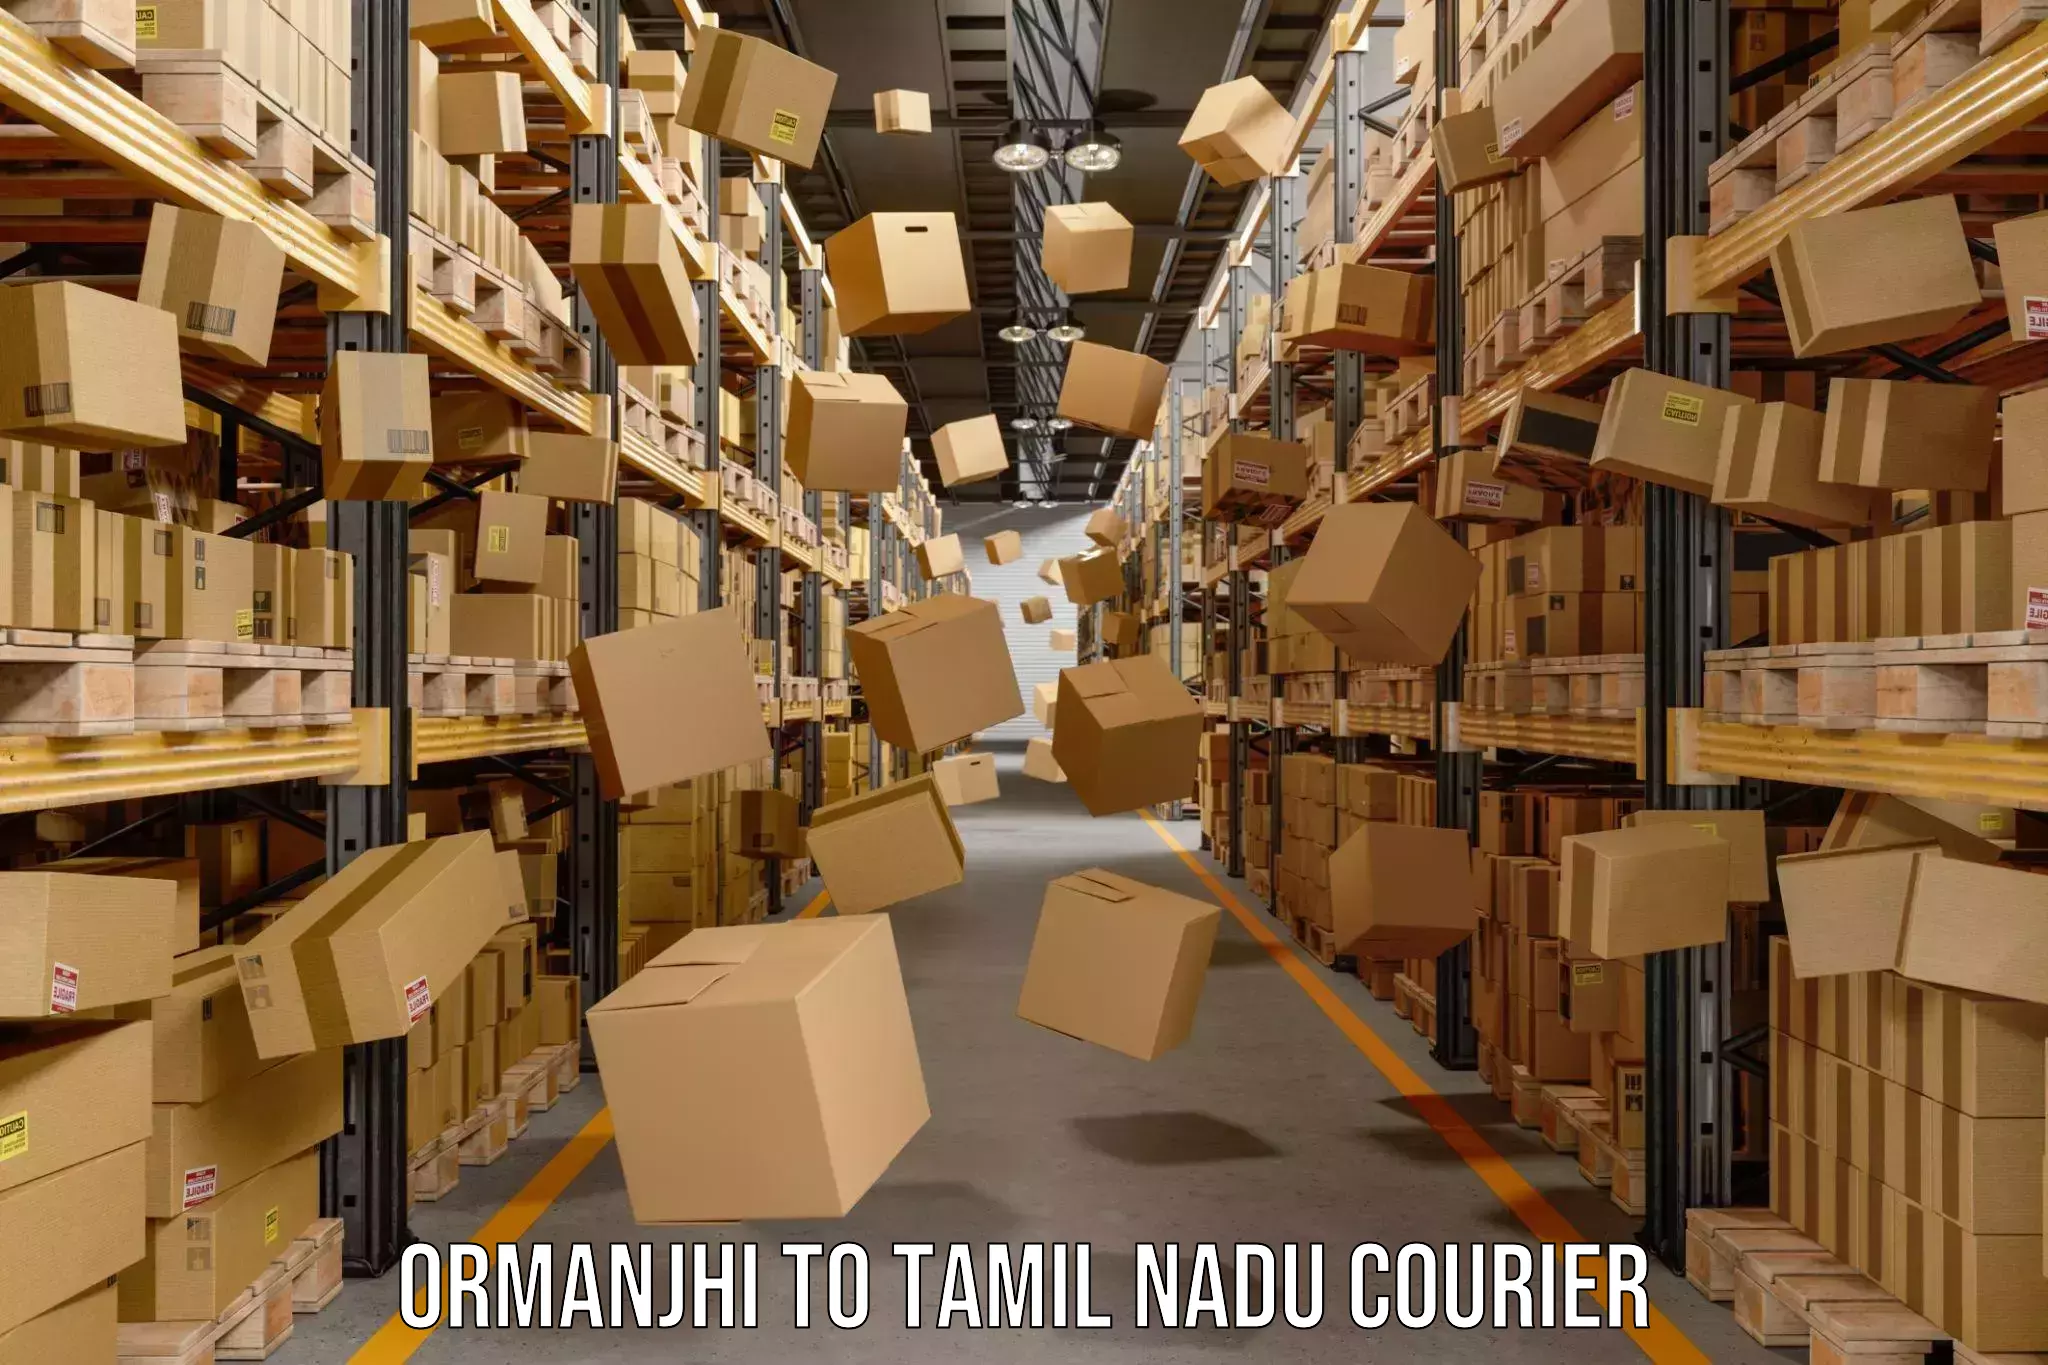 Cargo courier service Ormanjhi to Pollachi